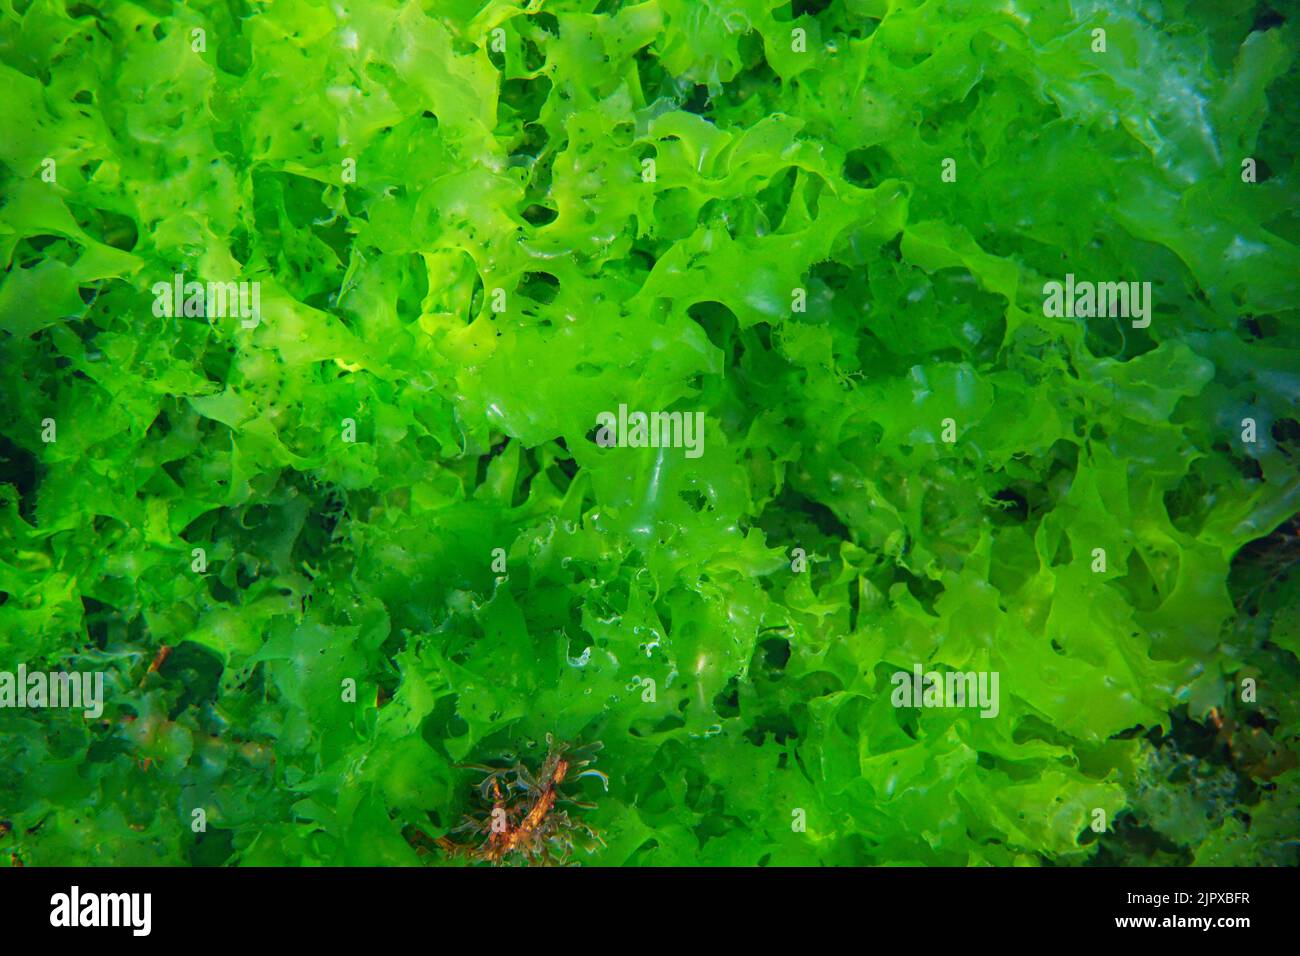 Laitue de mer Ulva lactuca algue verte comestible, sous l'eau dans l'océan Atlantique, Espagne Banque D'Images